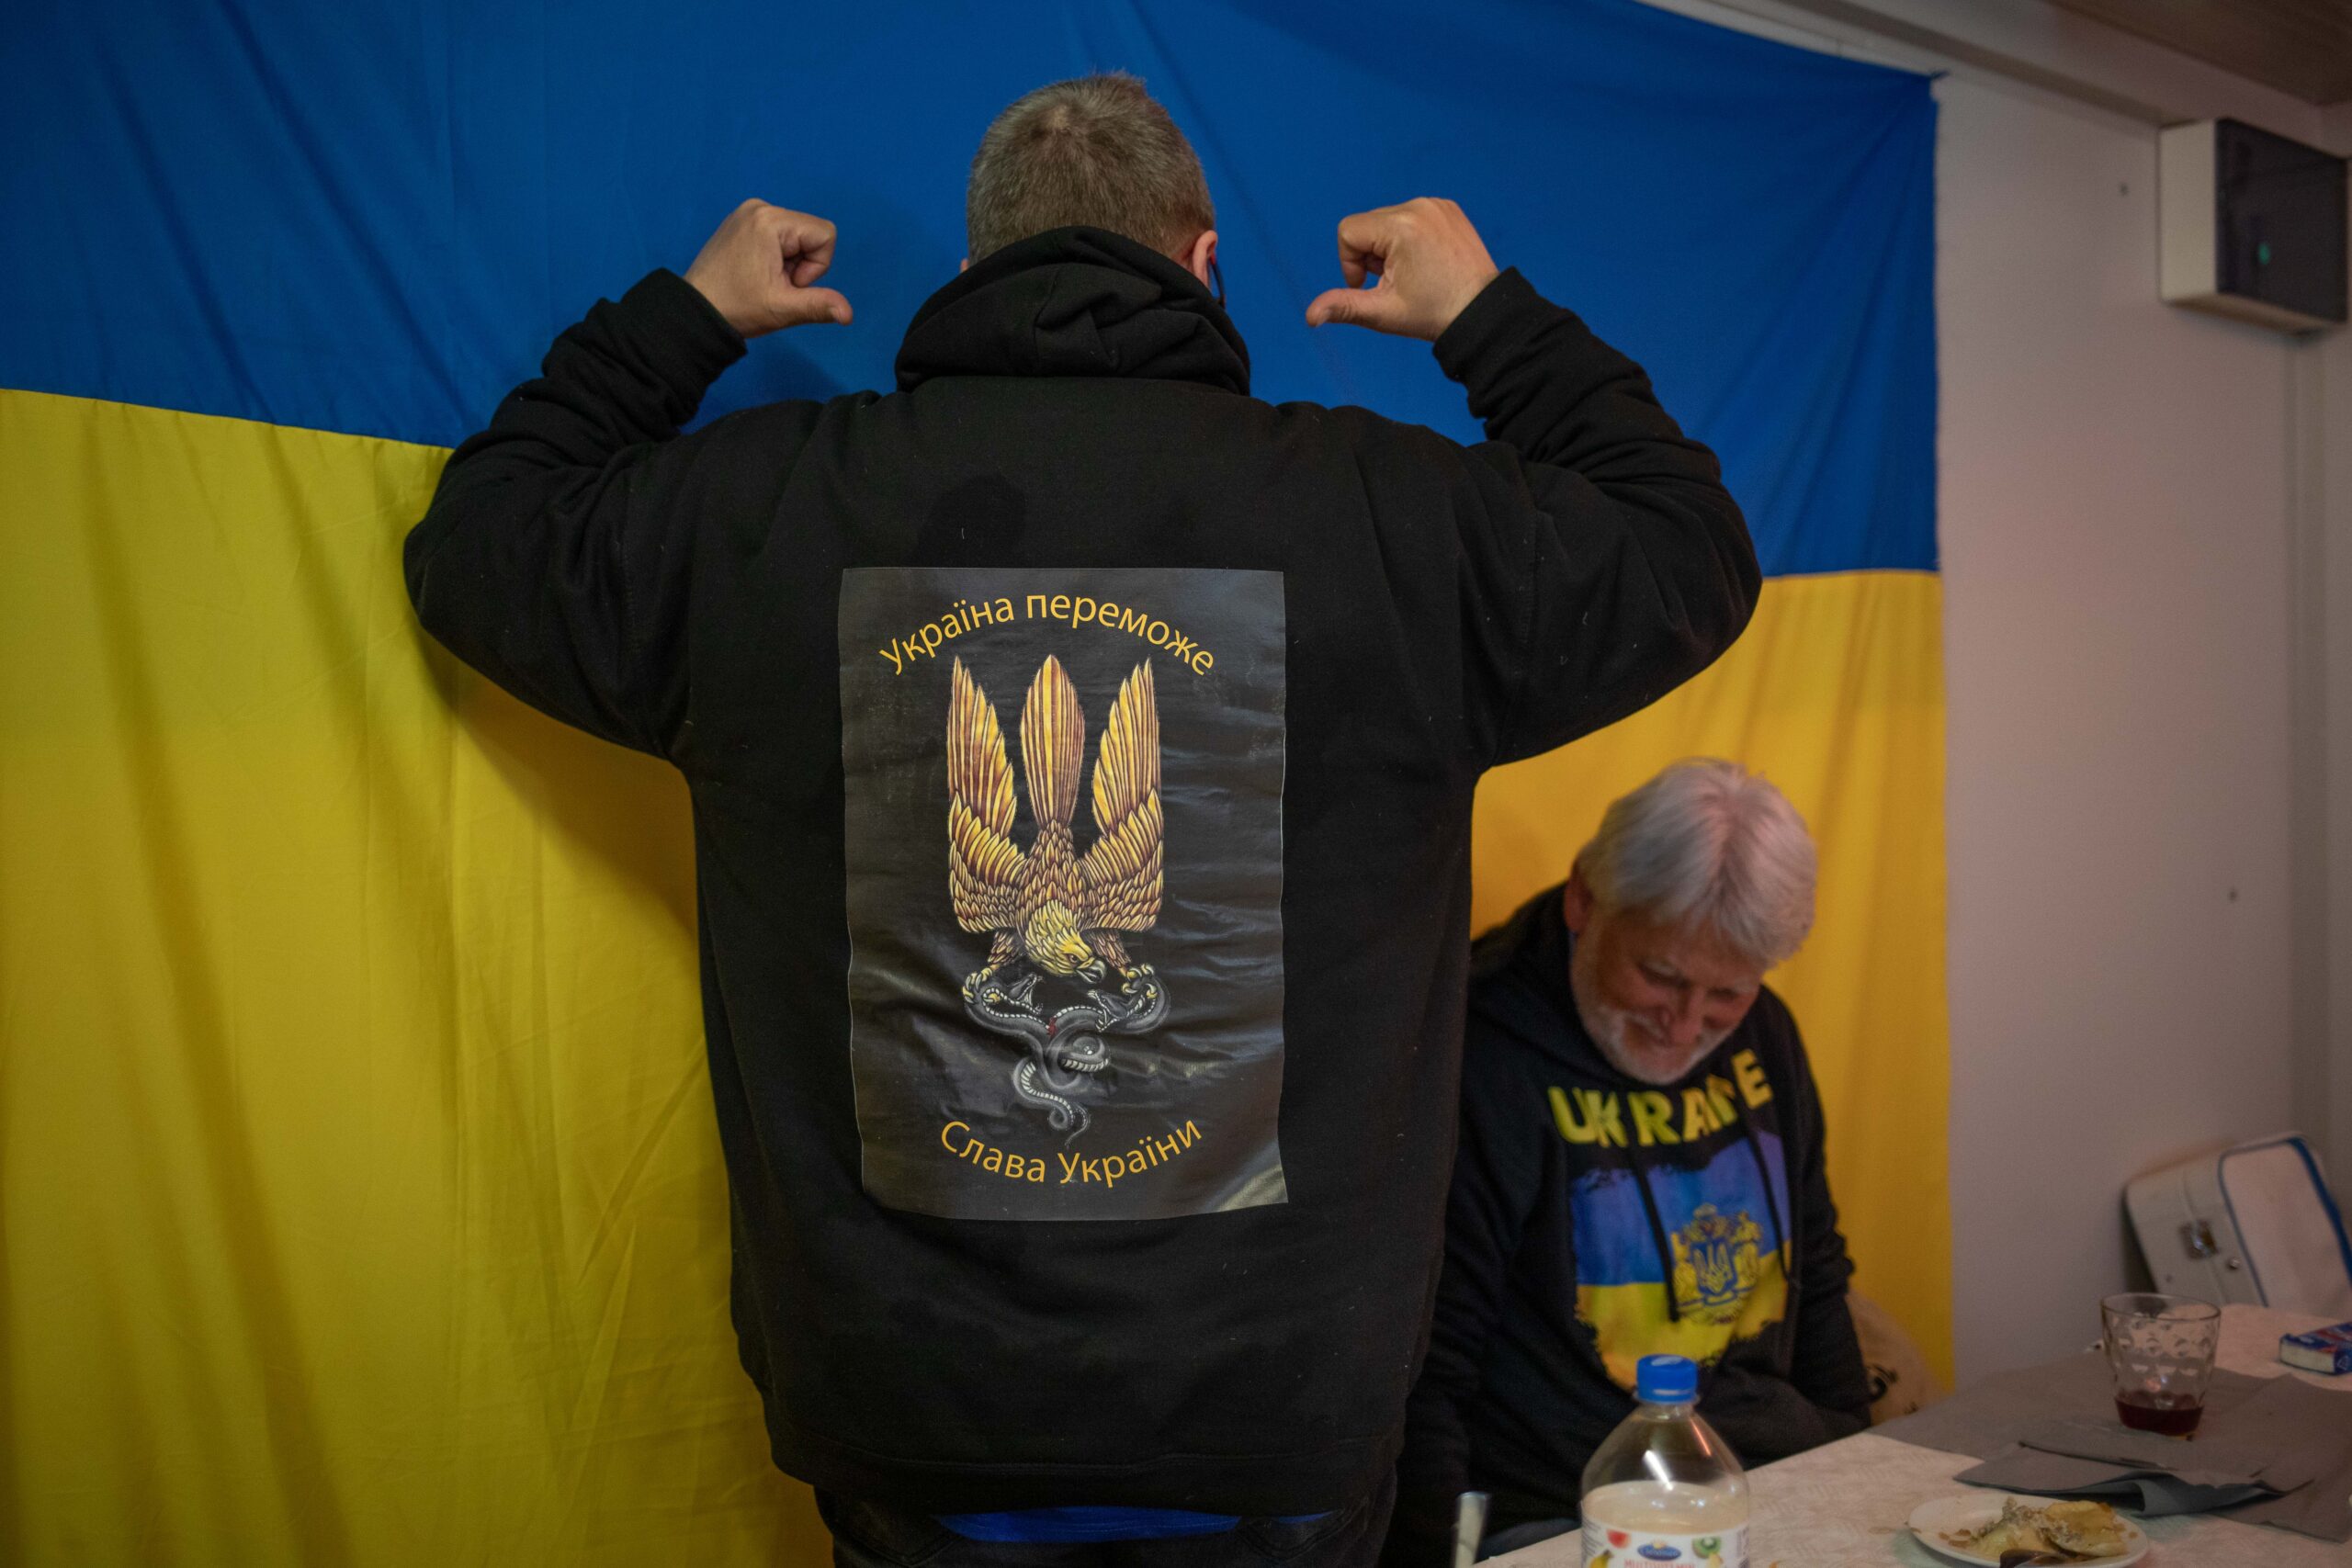 Es ist der Rücken eines Mannes zu erkennen auf dessen Rücken das ukrainische Zeichen für Sieg zu sehen ist.